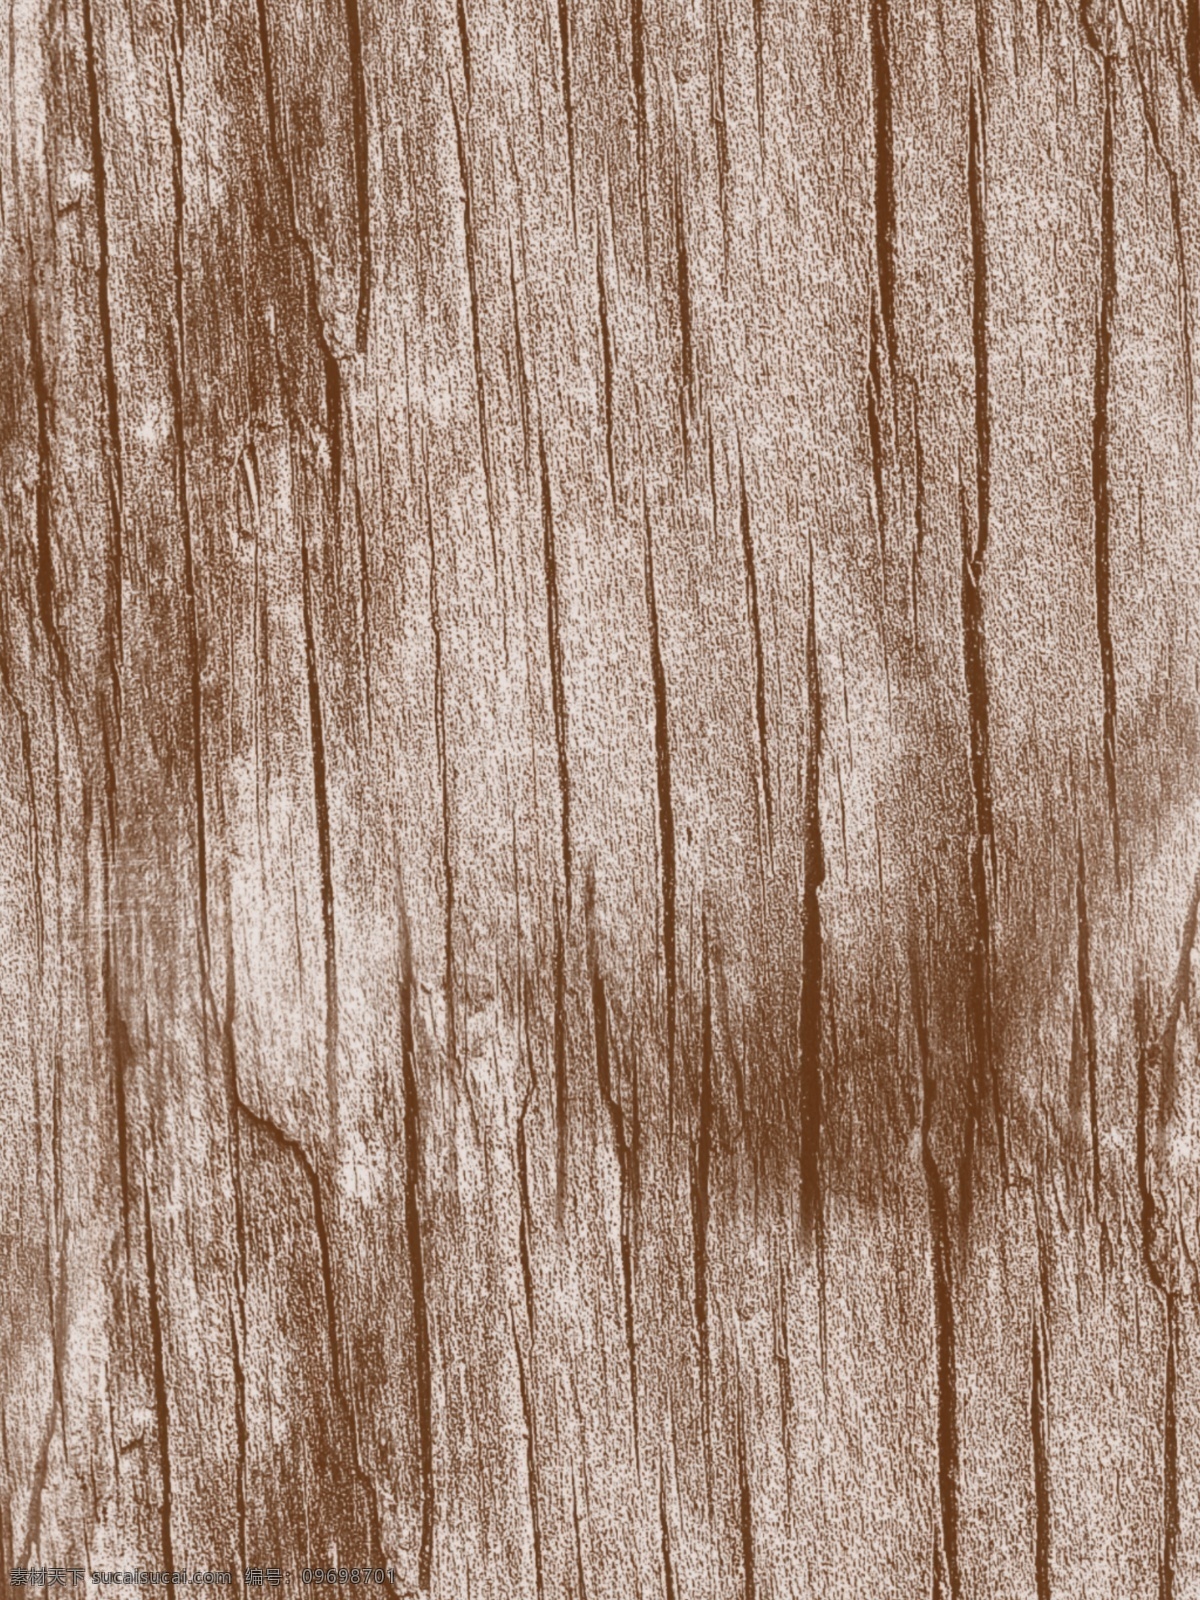 木头 木纹 质感 复古 背景 怀旧 旧时光